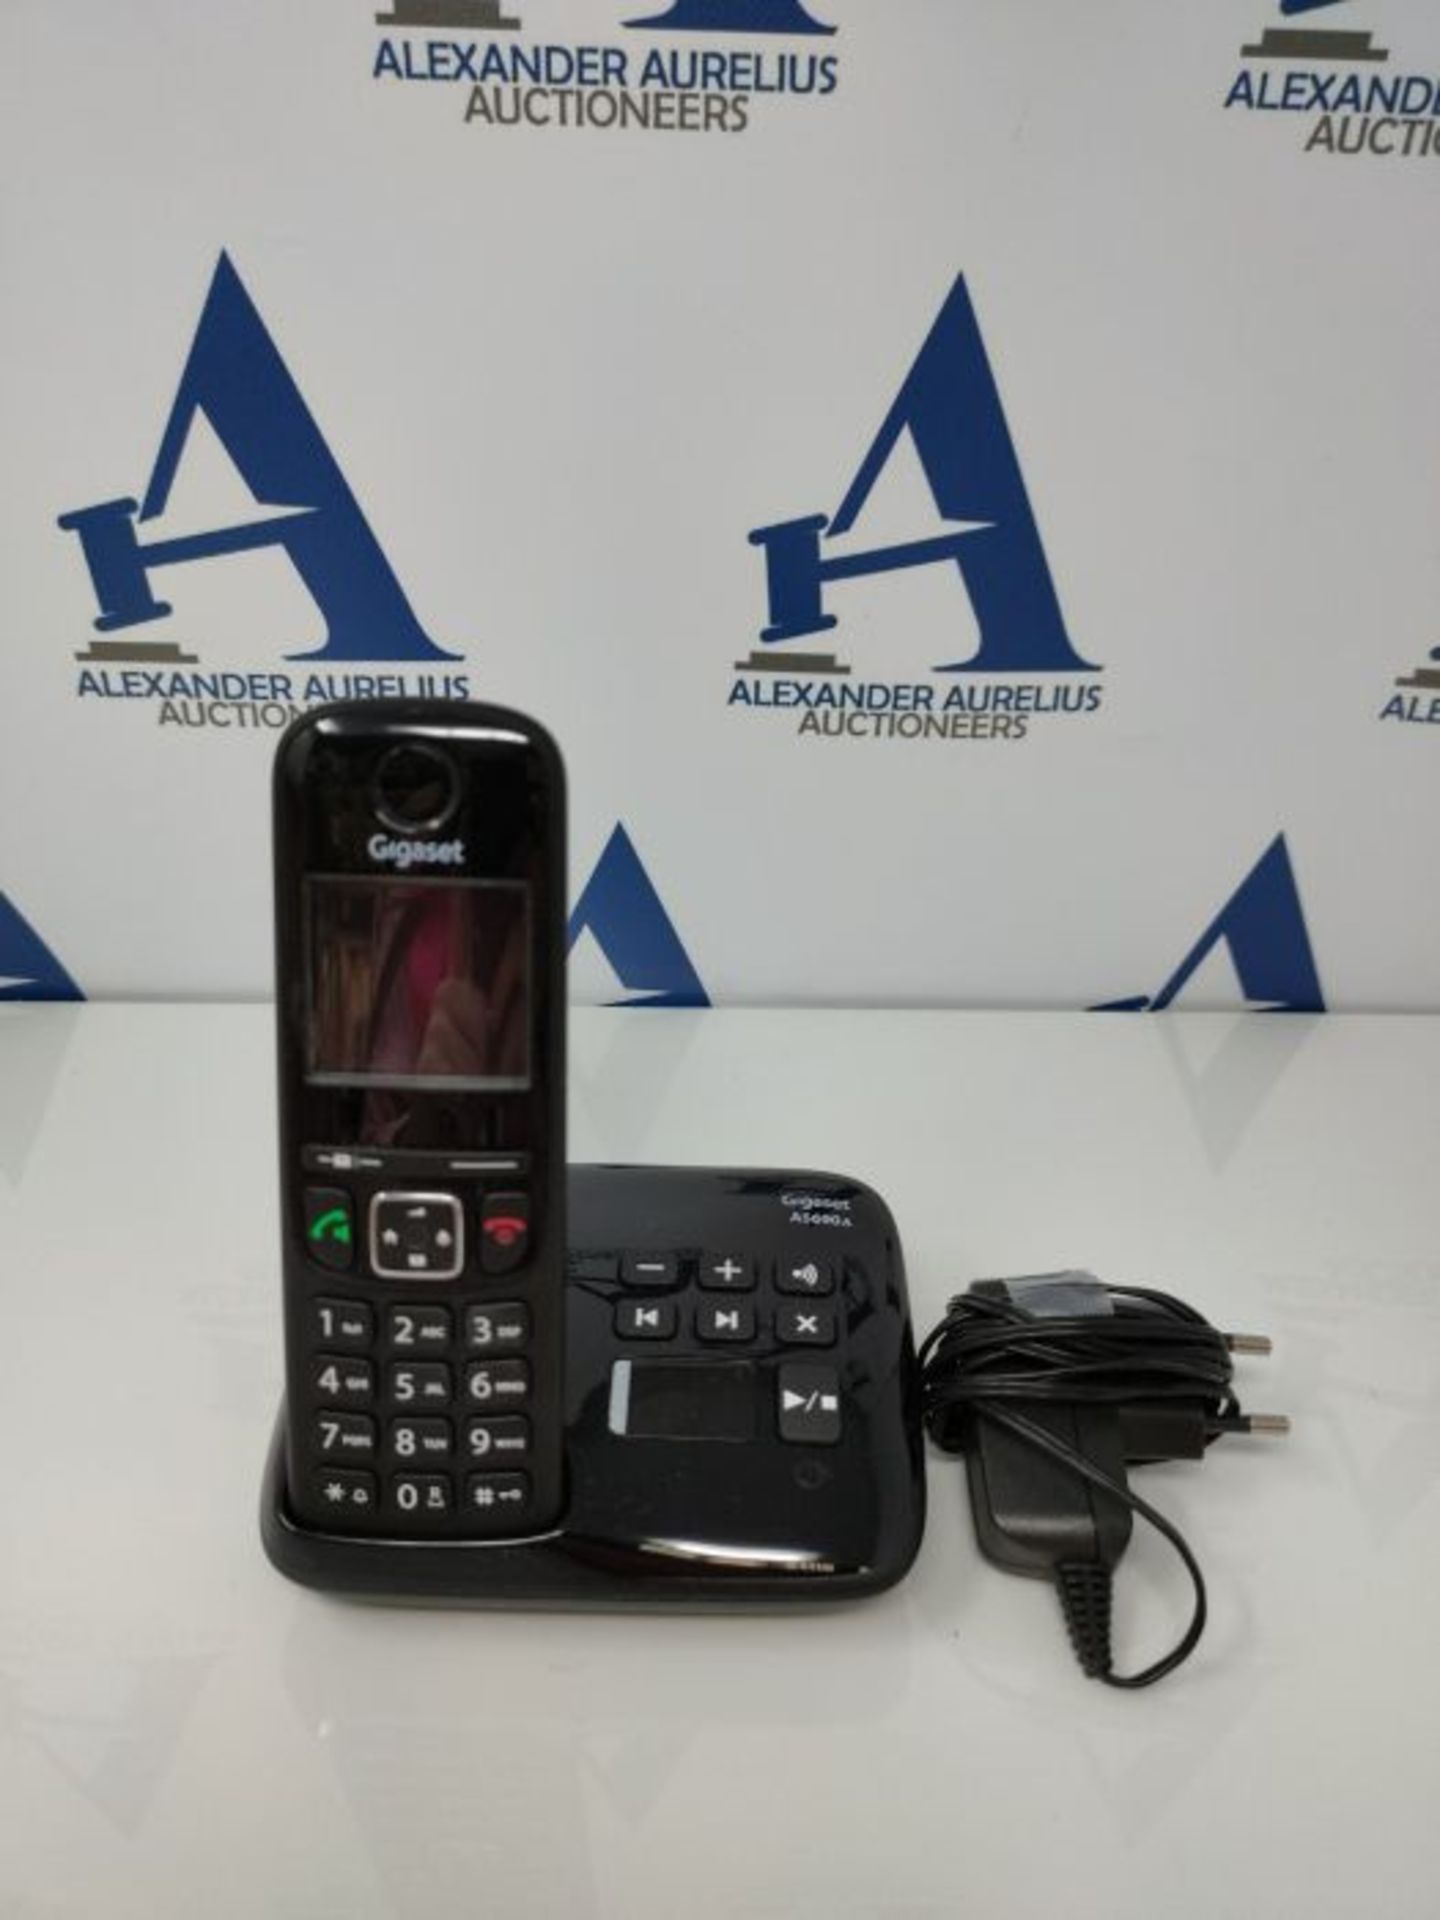 Gigaset AS690A - Schnurloses Telefon mit Anrufbeantworter - großes, kontrastreiches D - Image 2 of 2